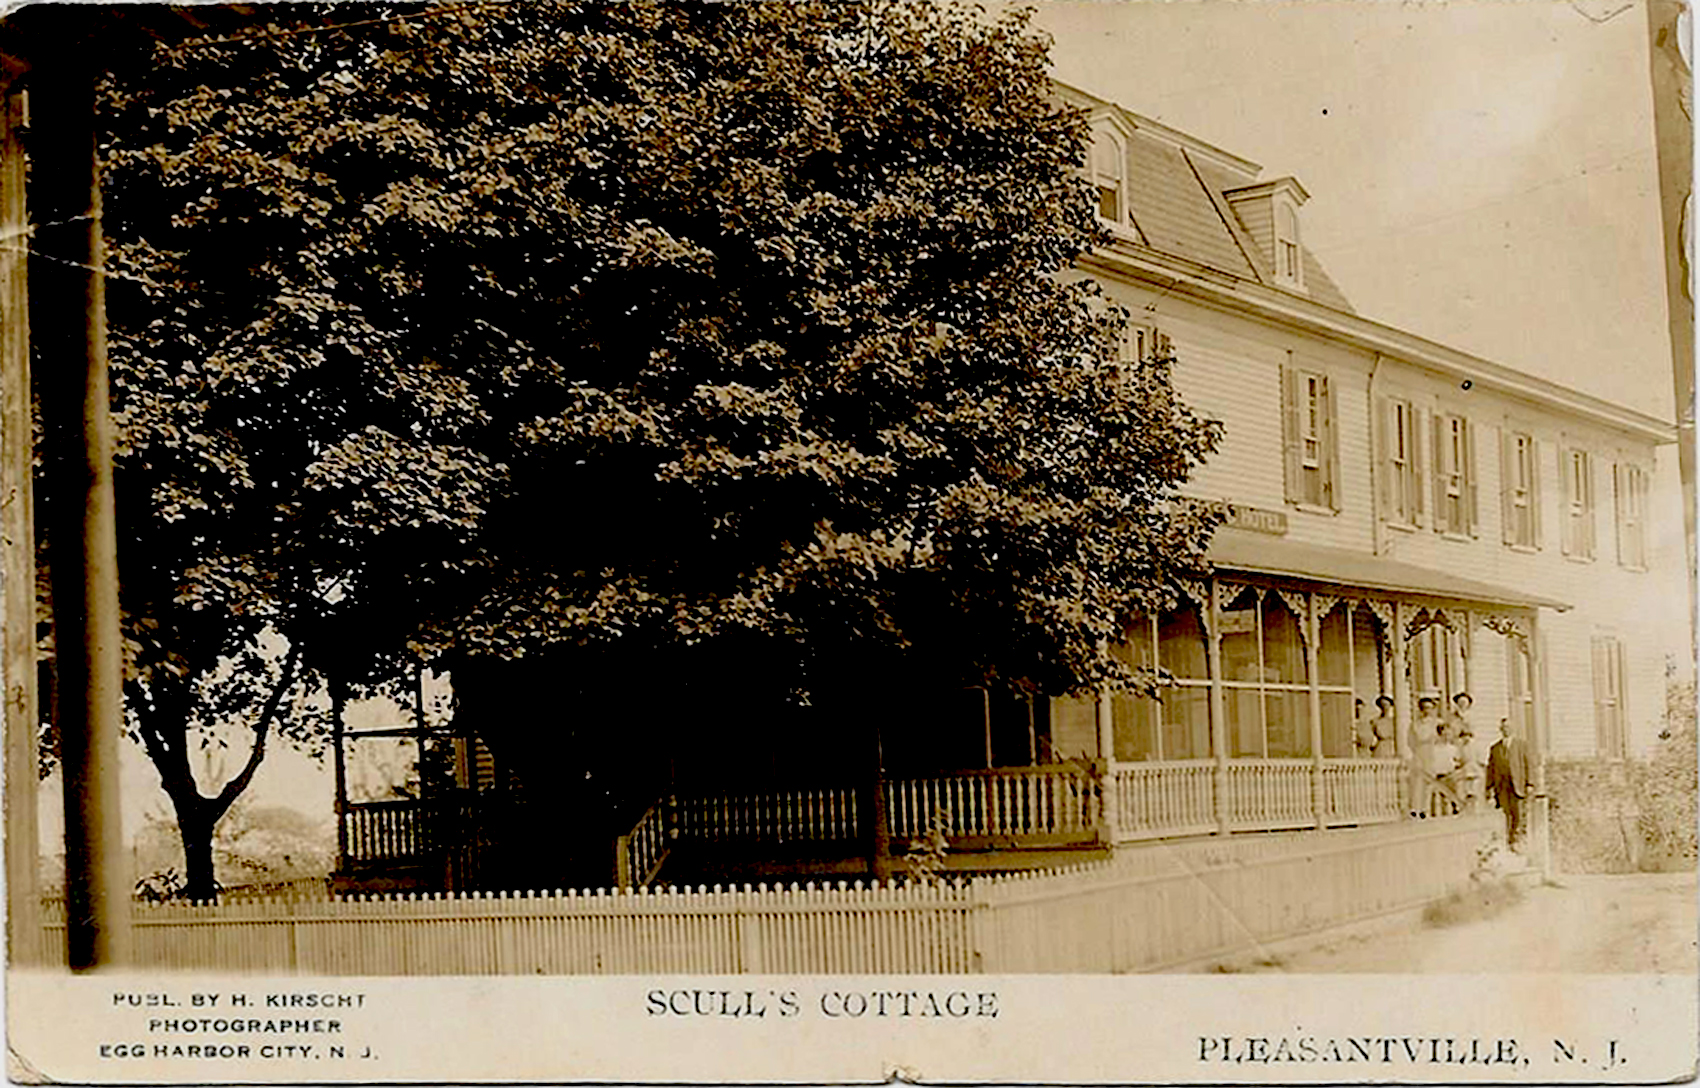 Pleasantville - Max H Kirscht Scull's Cottage - c 1910